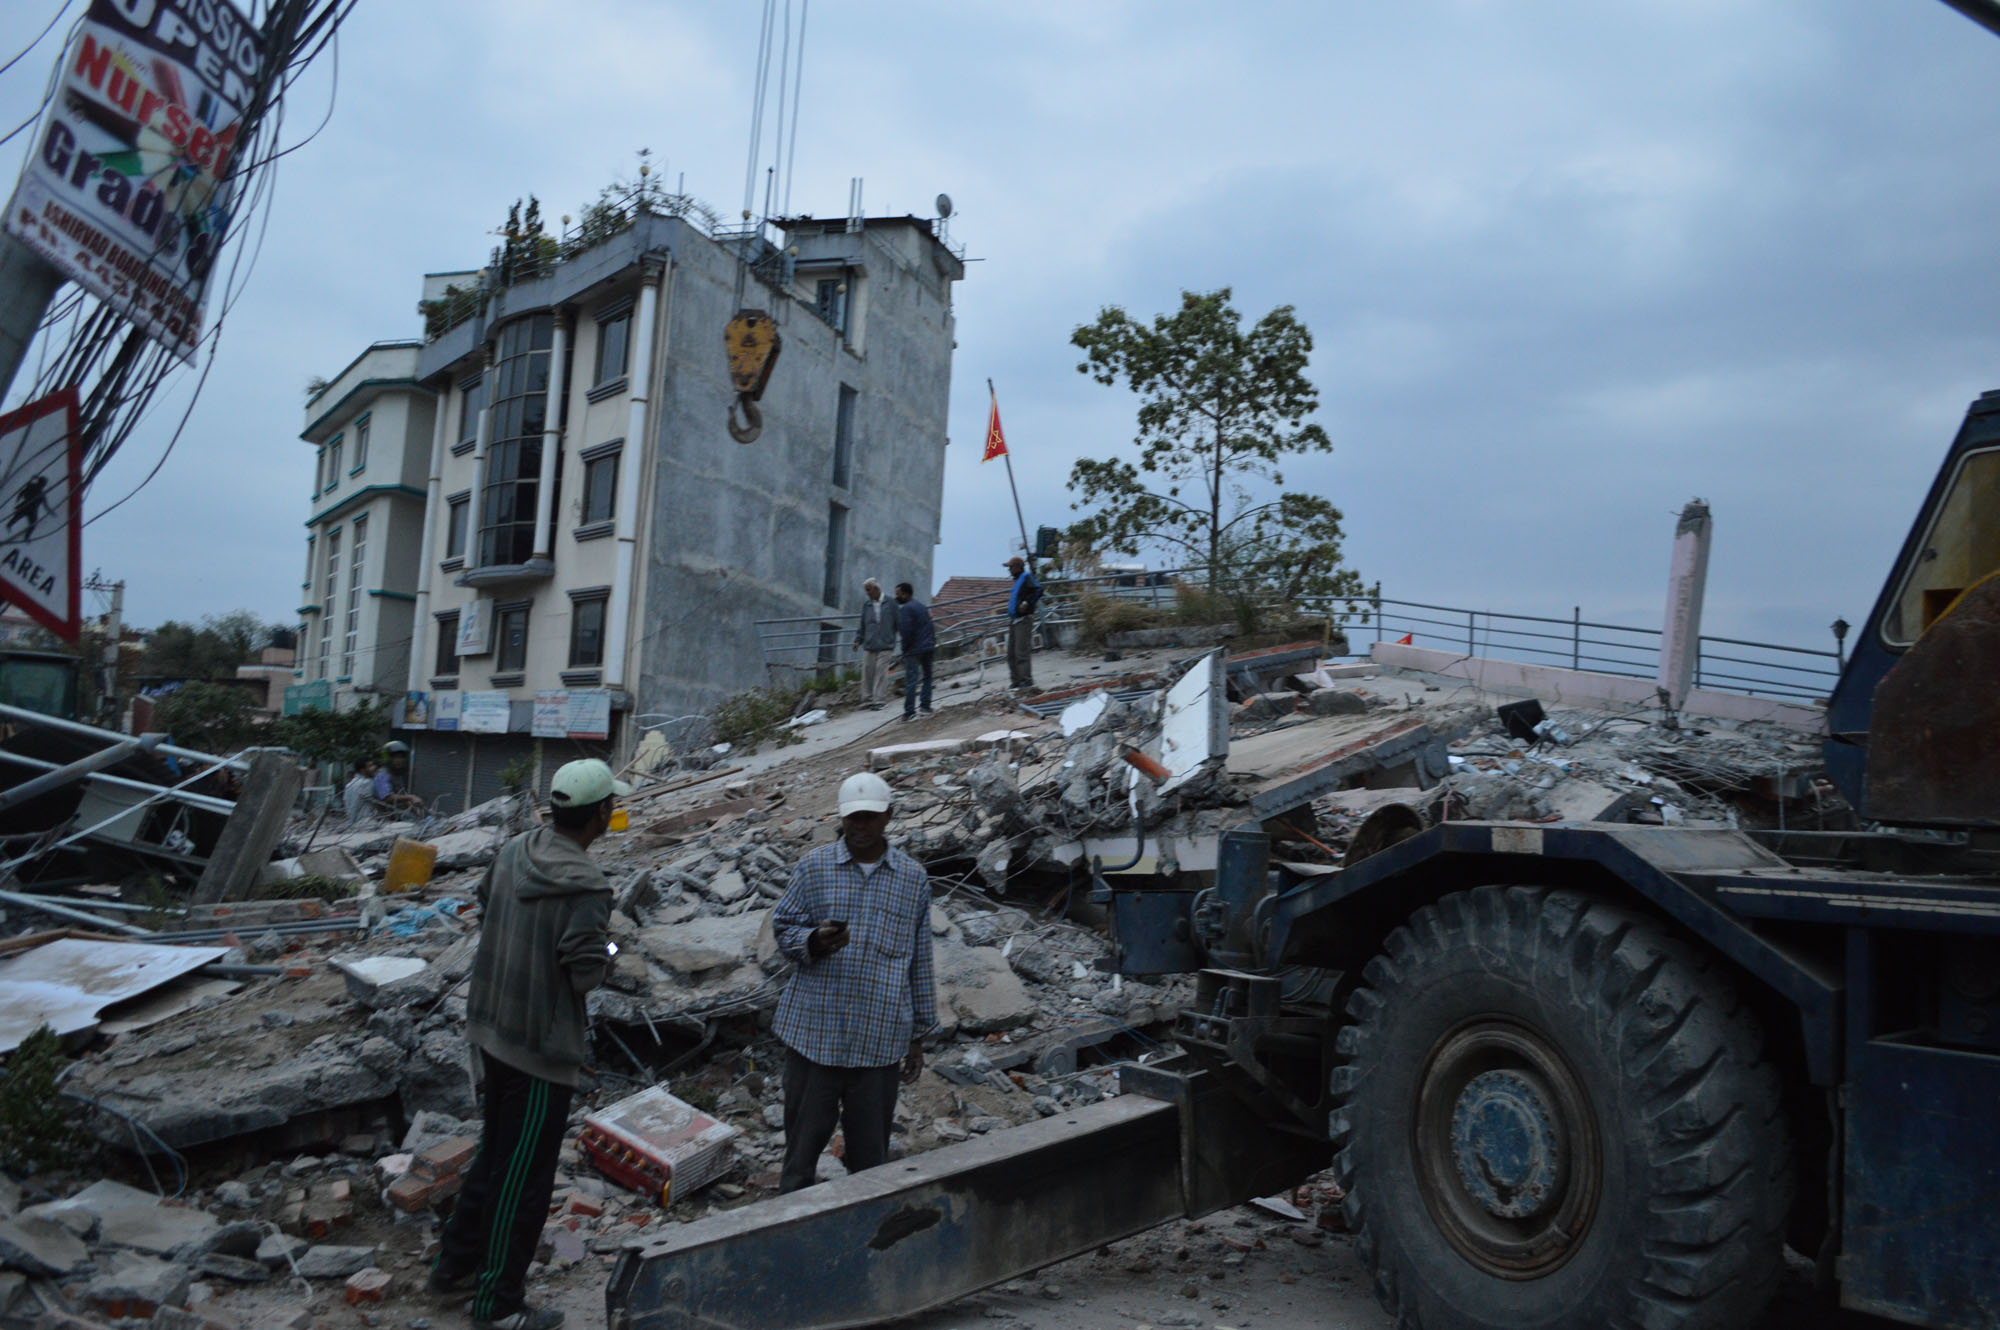 Nepalia kohtasi lauantaina 25.4. laaja ja voimakas maanjäristys lähellä pääkaupunki Kathmandua. Sunnuntaina 26.4. on sattunut uusia järistyksiä. Kuva: Luterilainen maailmanliitto